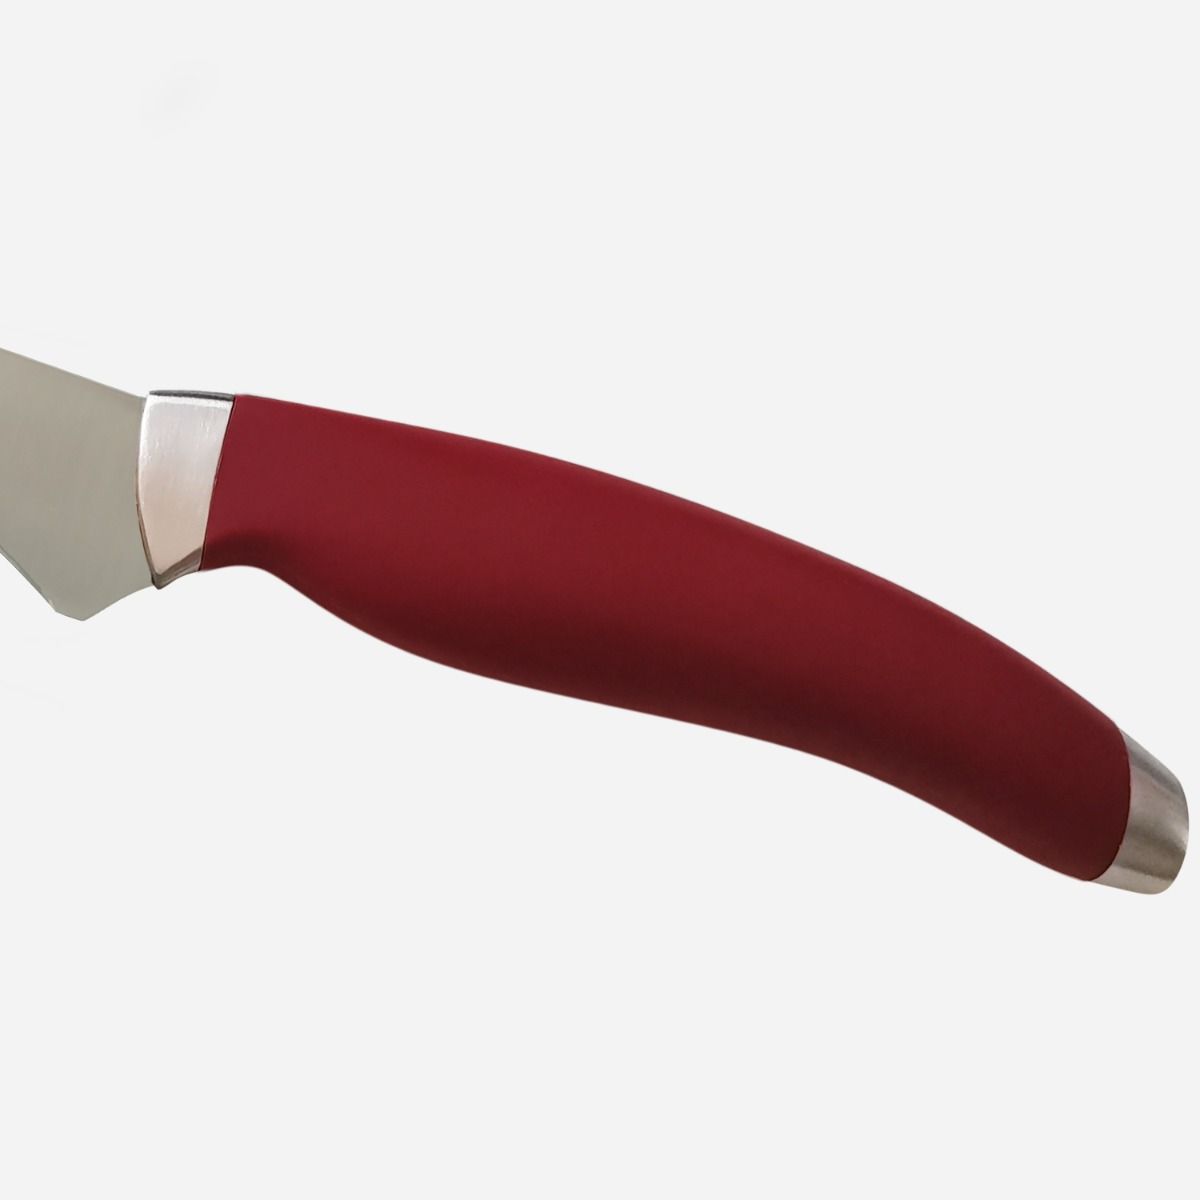 Santoku Knife 17 cm  Stainless Steel Berkel Teknica Handle Red Resin